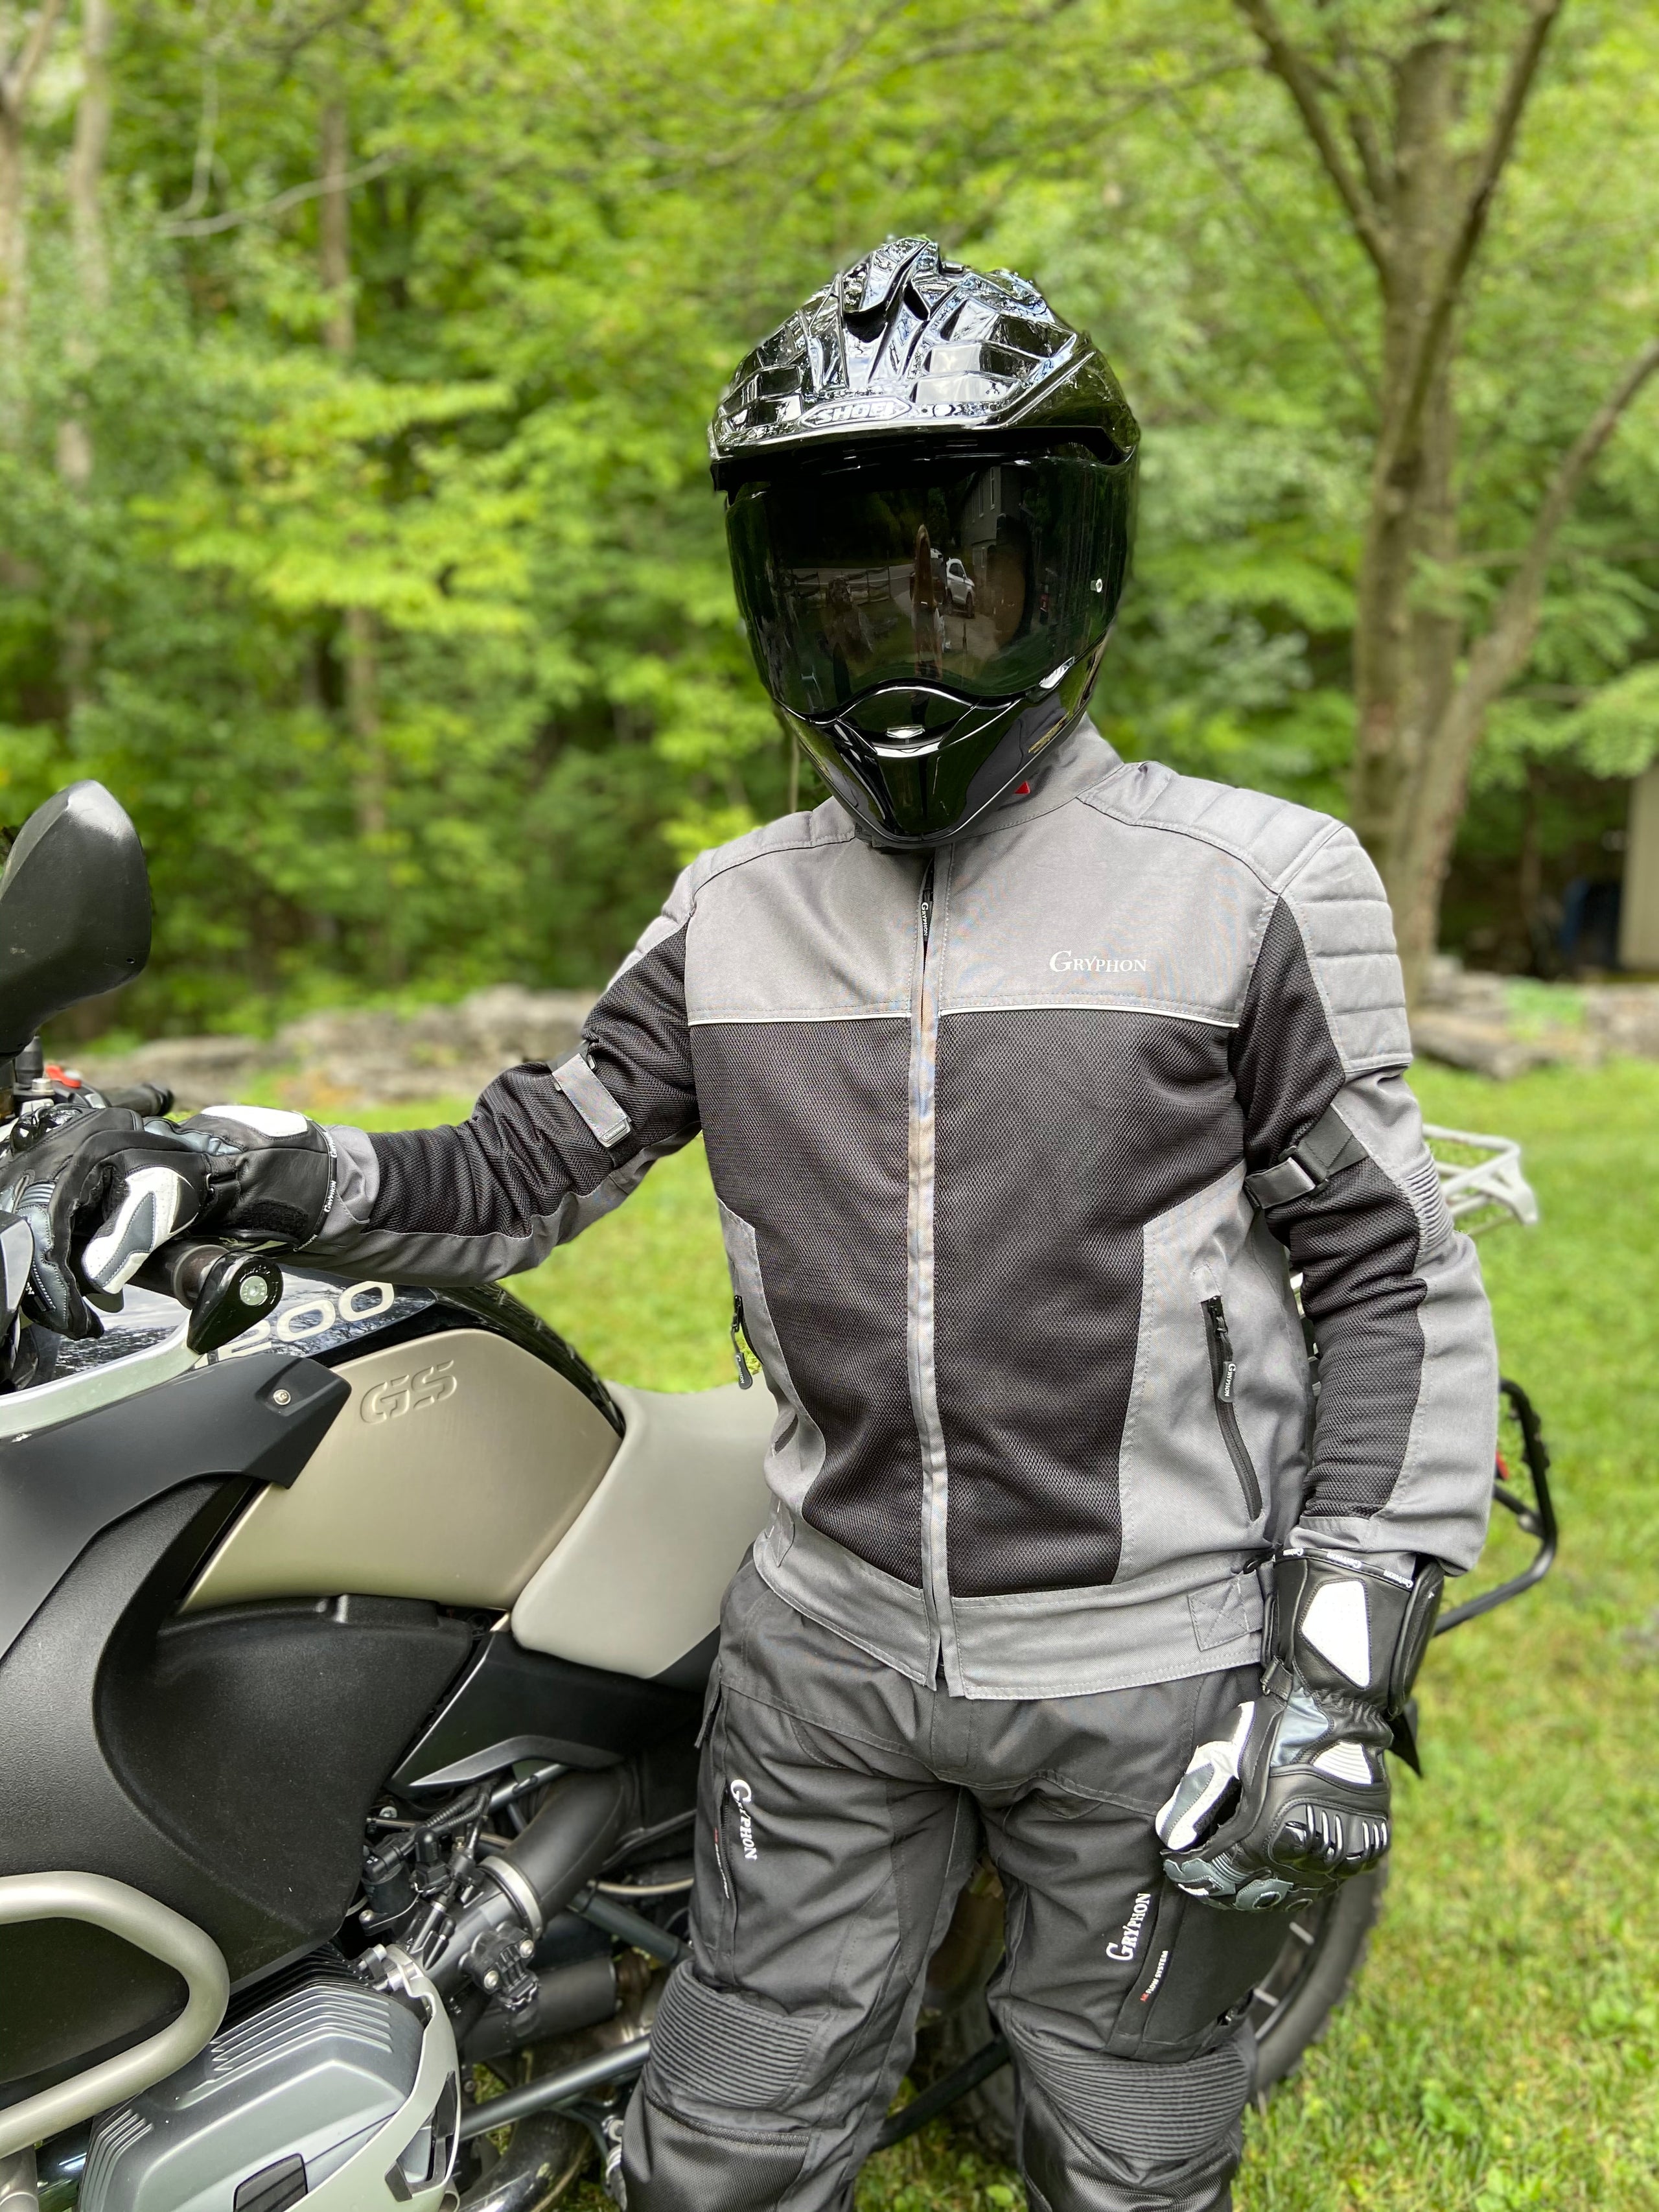 Gryphon Men's Breeze Mesh Motorcycle Jacket